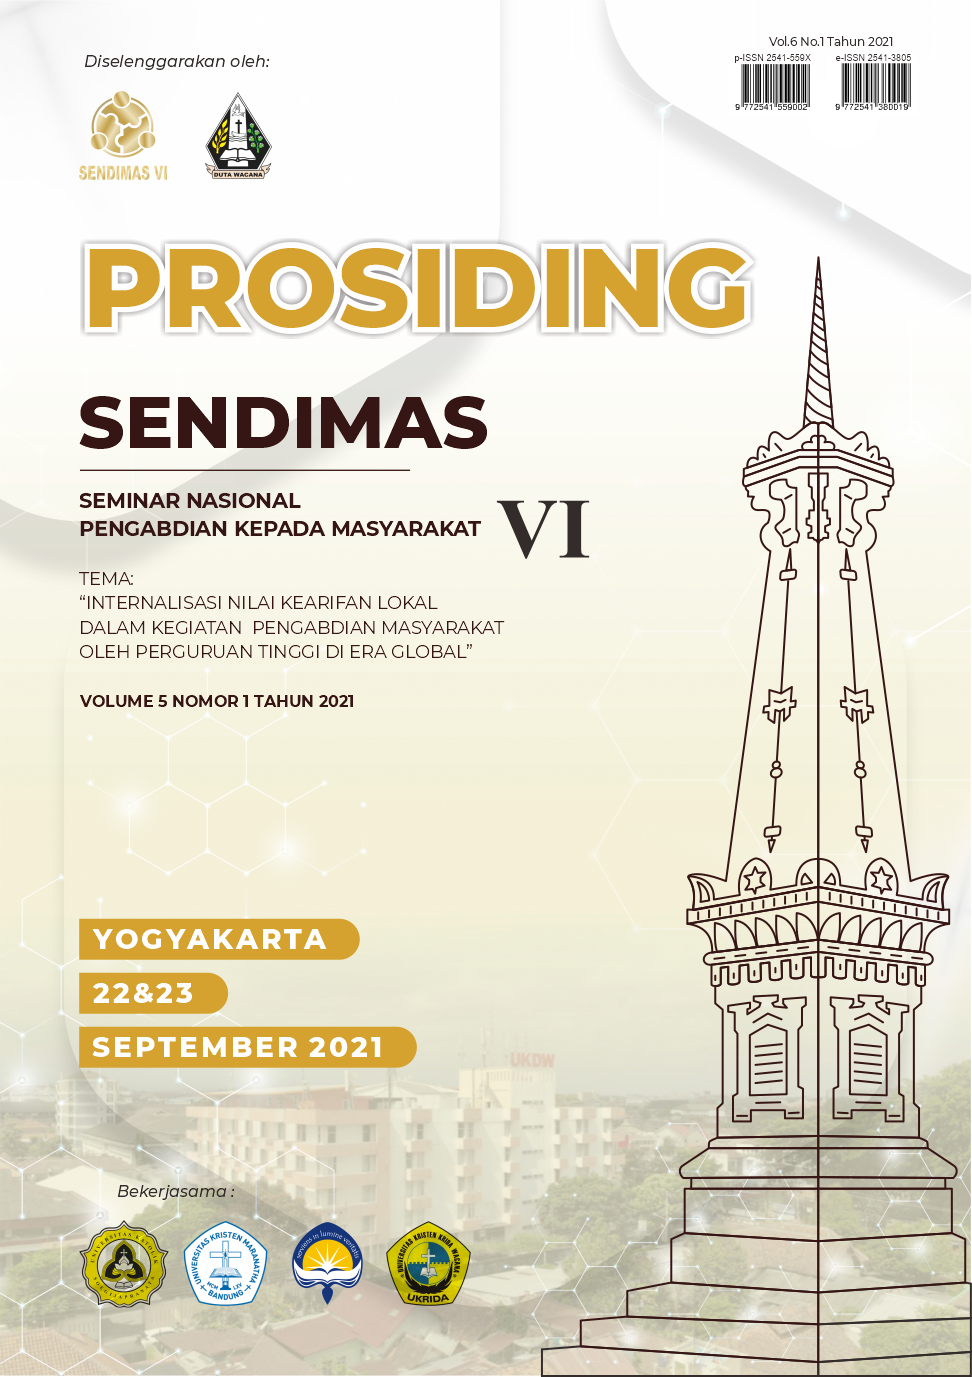 					View Vol. 6 No. 1 (2021): Prosiding Sendimas
				